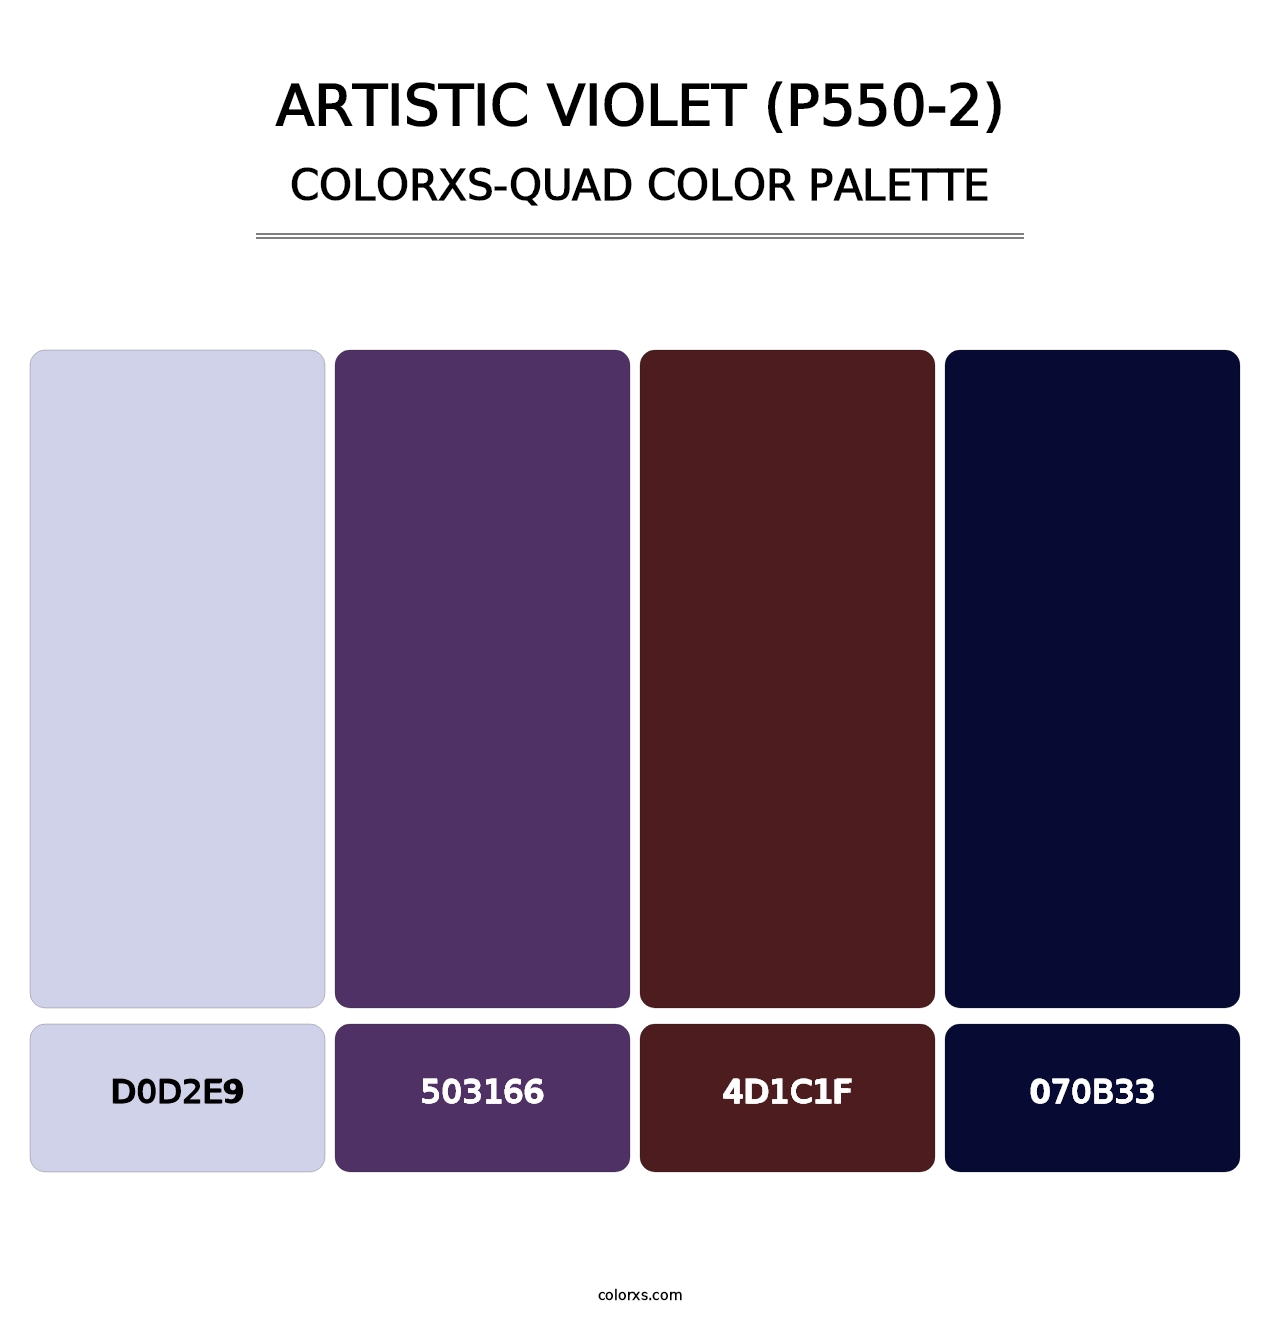 Artistic Violet (P550-2) - Colorxs Quad Palette